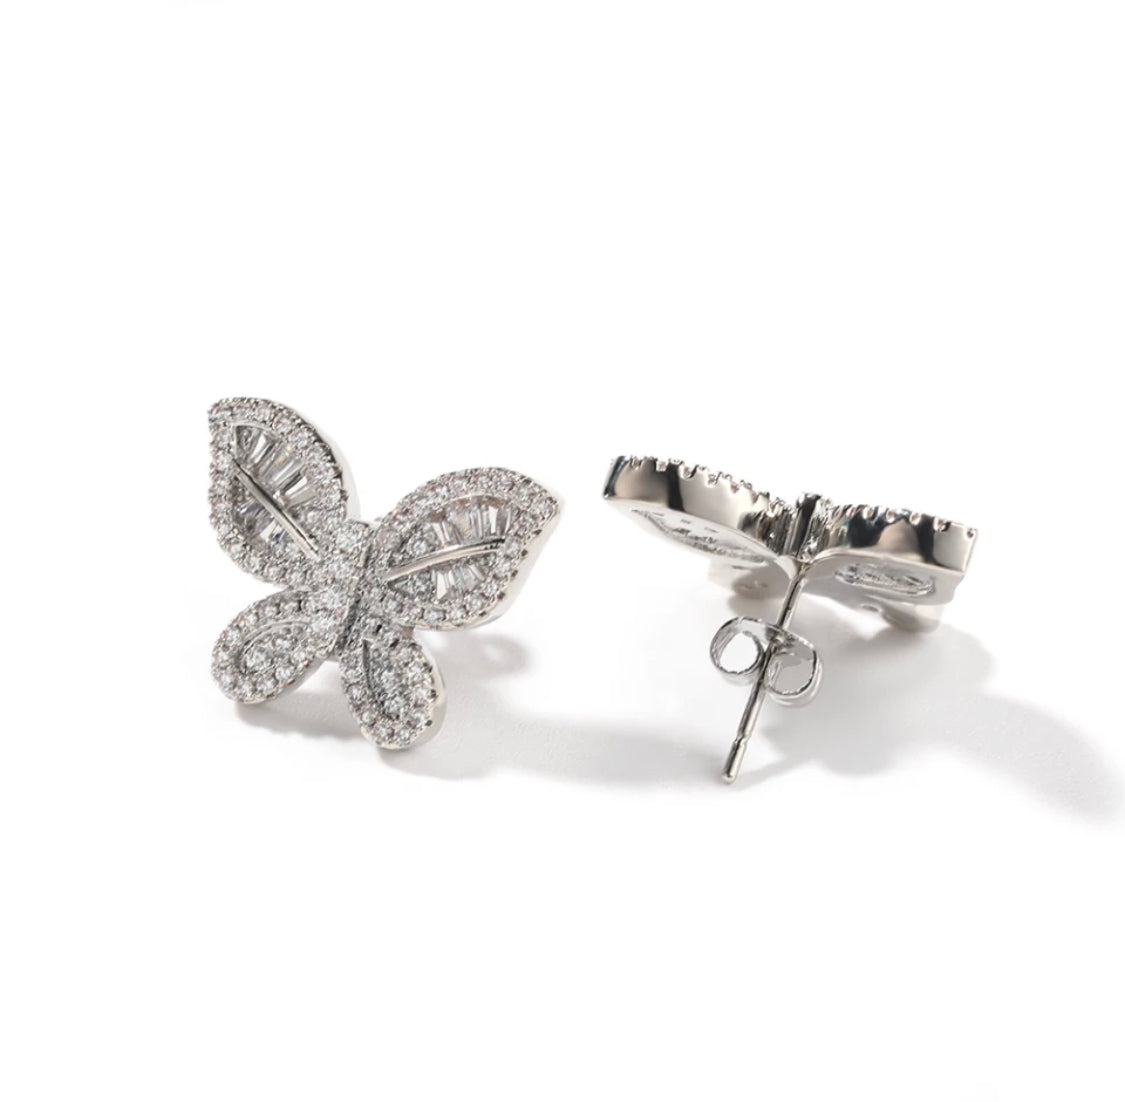 The Delicate Butterfly Stud earrings